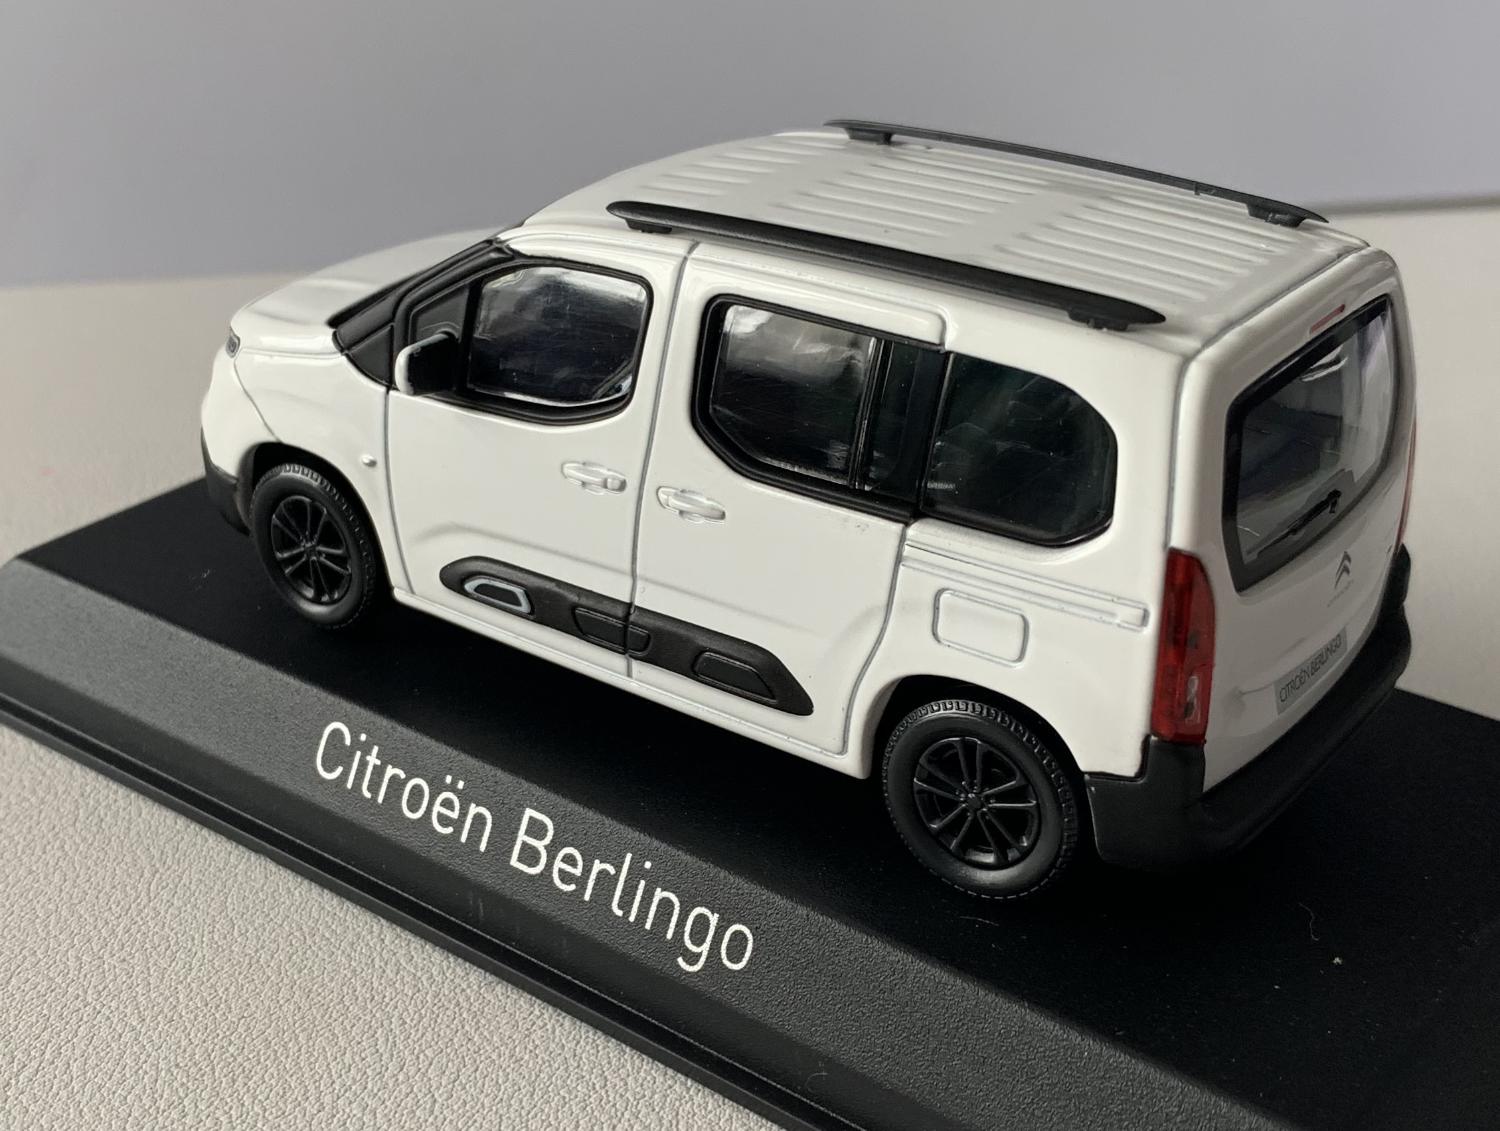 Citroen Berlingo 2020 in white 1:43 scale model from Norev, 155766